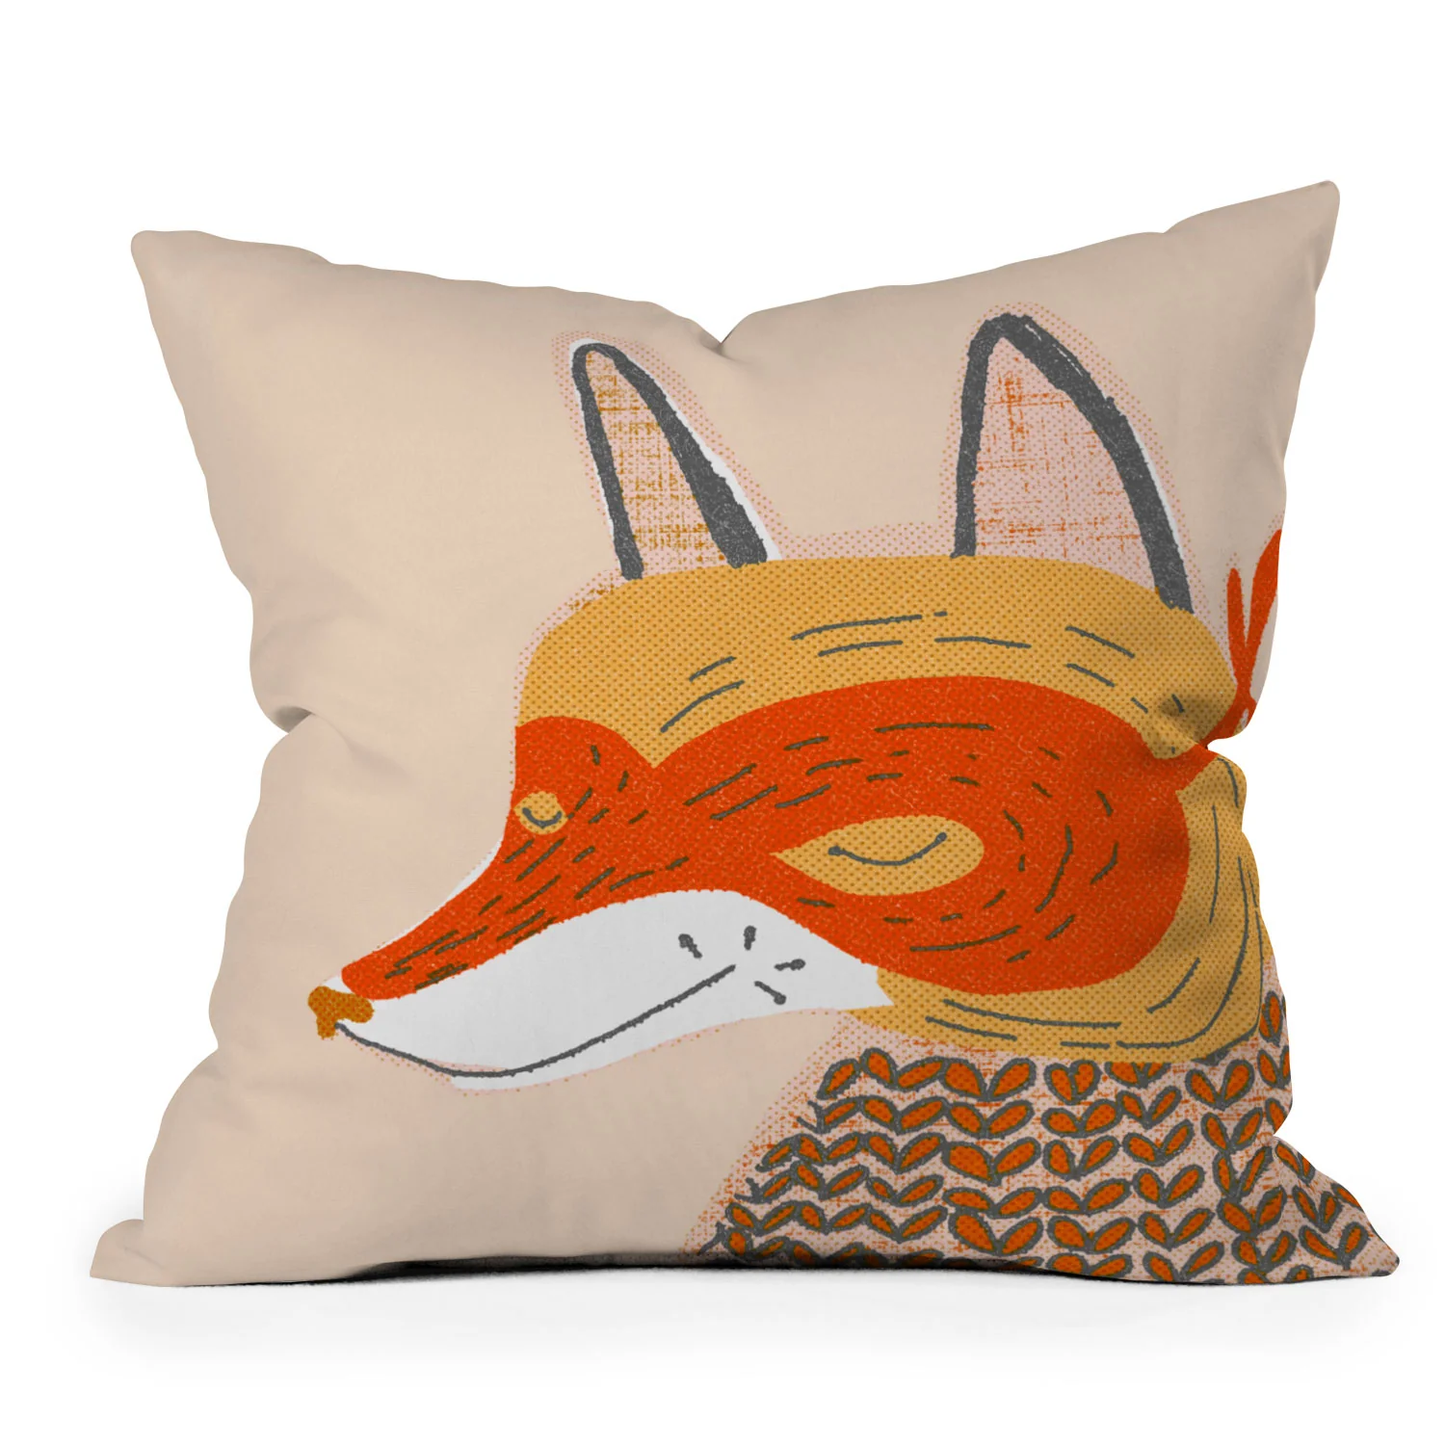 Mr. Fox Throw Pillow